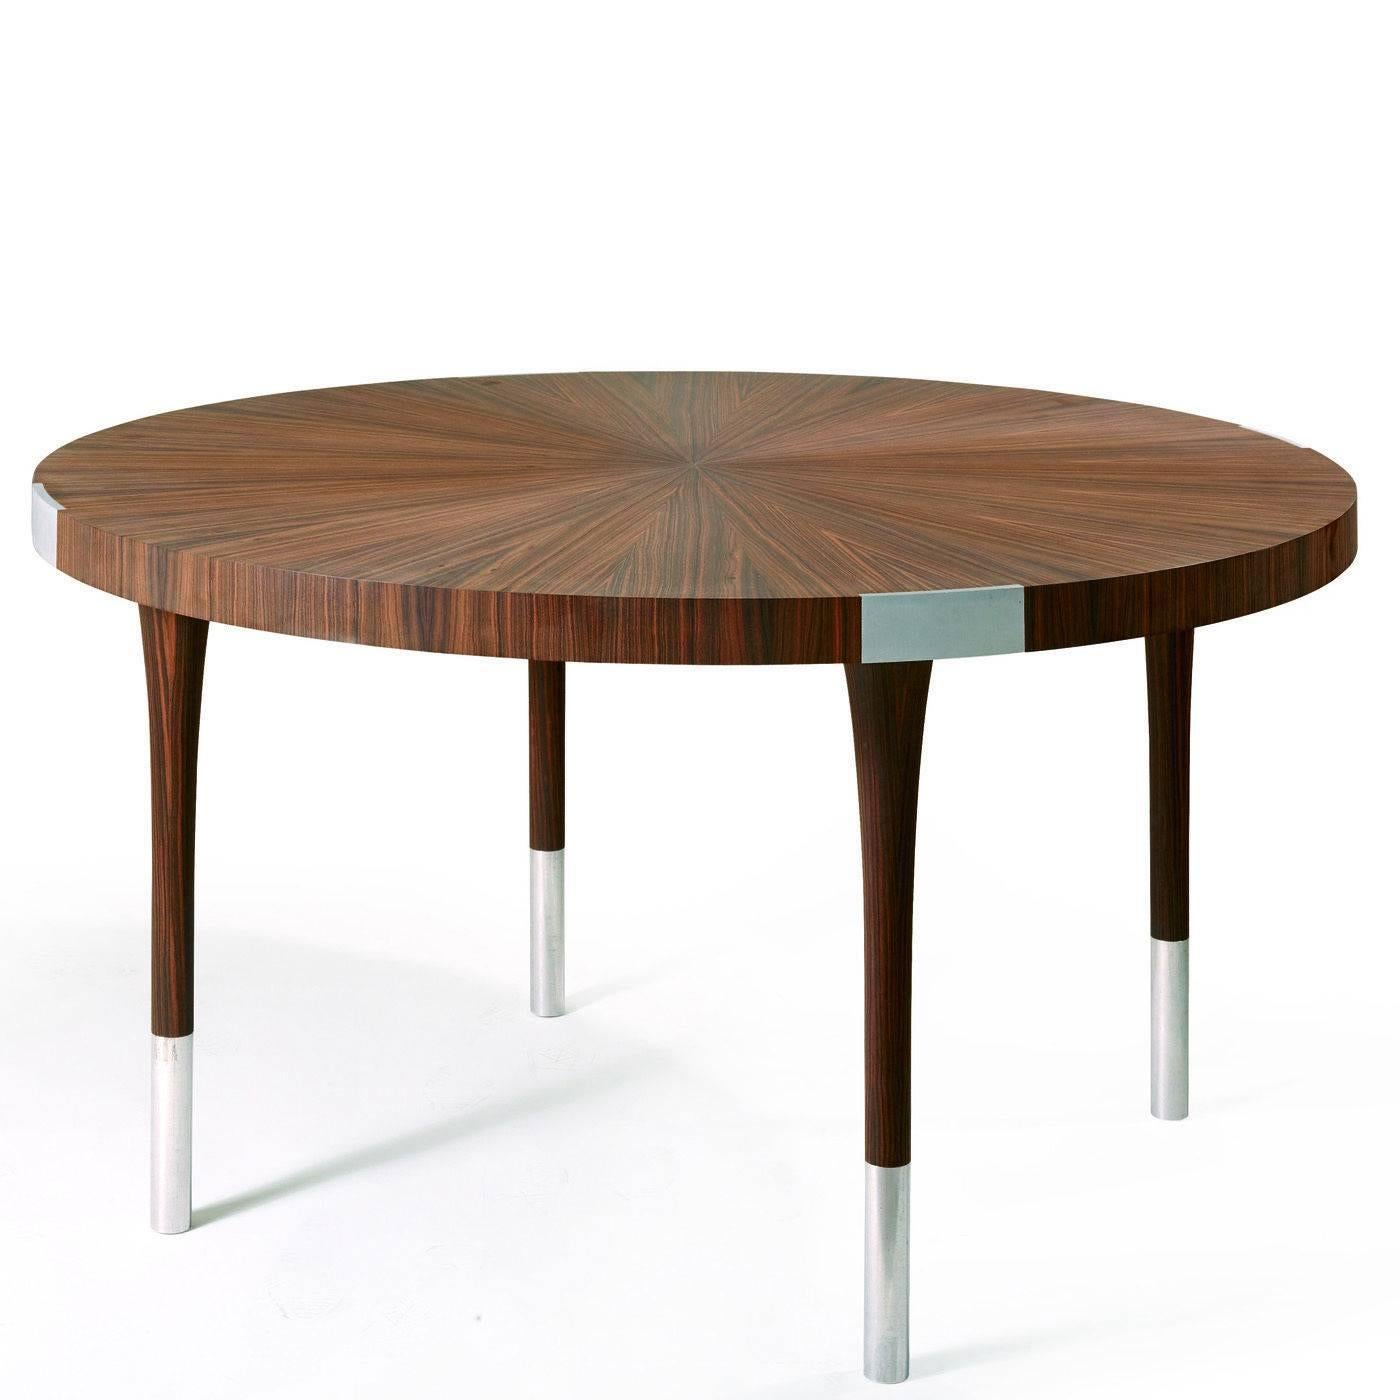 Dieser elegante runde Tisch aus Makassar-Ebenholz mit seinen markanten dunkelbraunen Schlägen verfügt über Einsätze aus satiniertem Aluminium. Die Platte ist mit einer traditionellen 